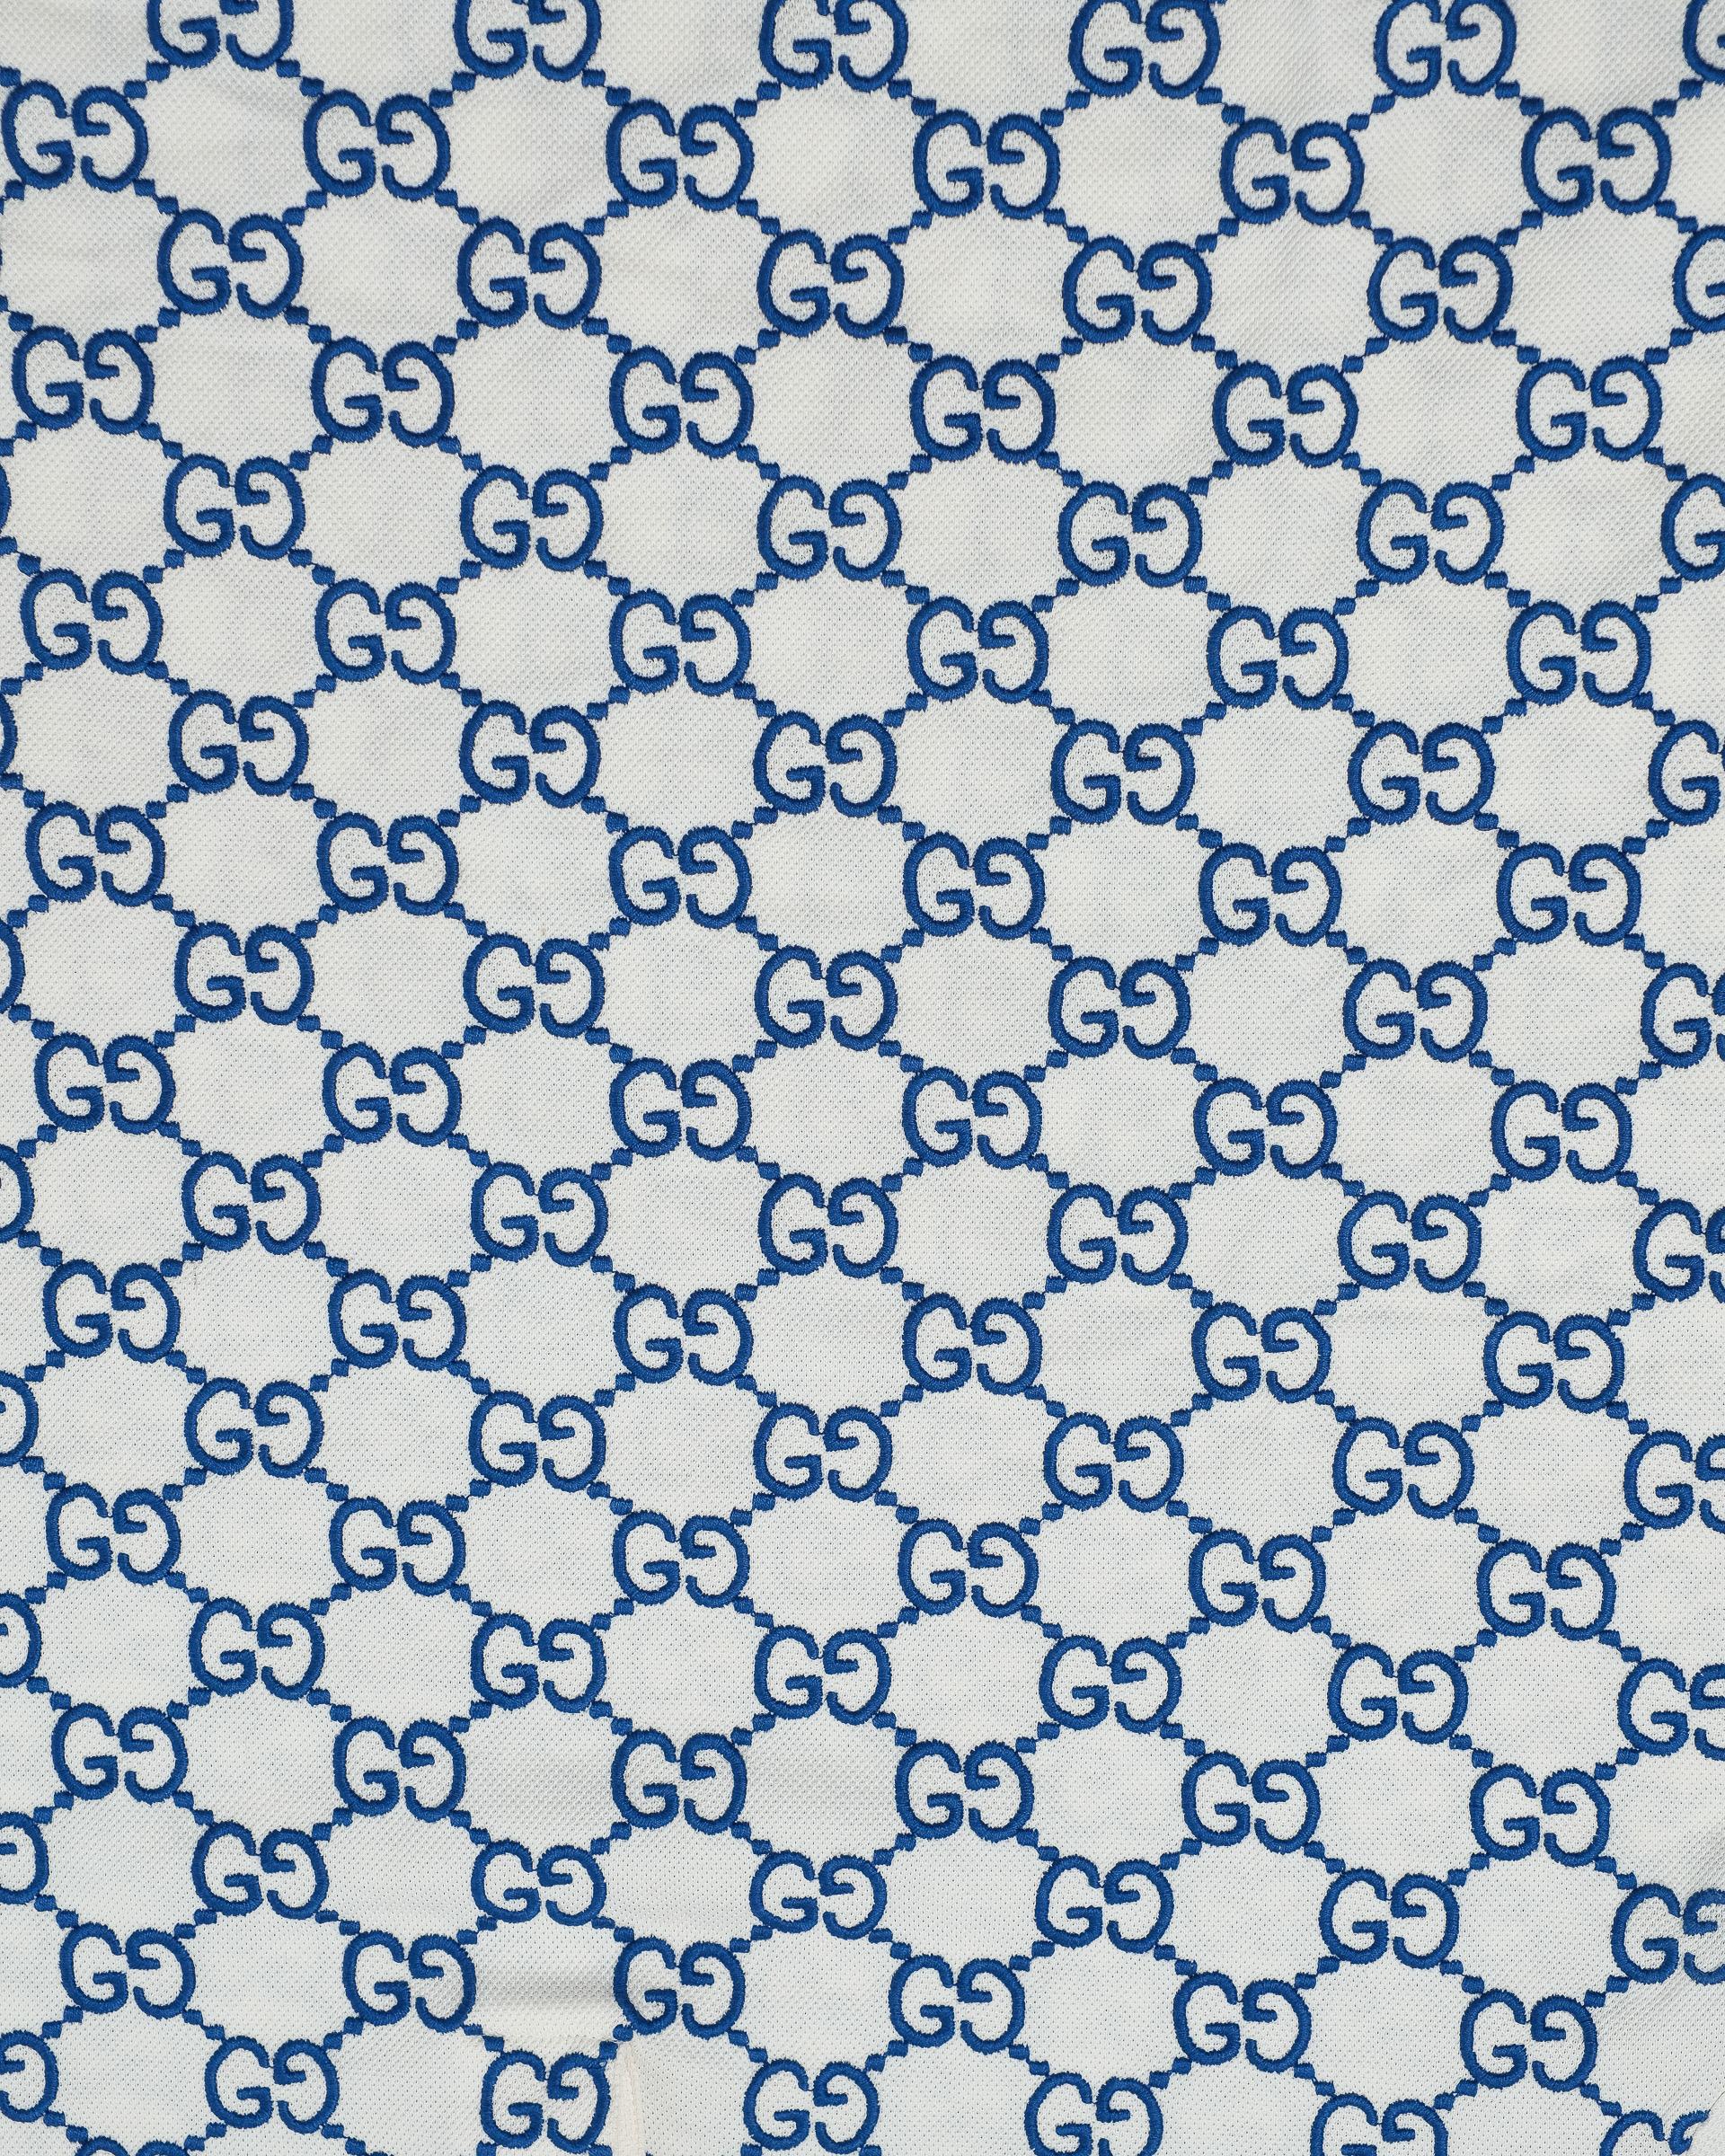 Polo firmata Gucci, modello Stretch, taglia L, realizzata in cotone piquet elasticizzata bianca e blu. Dotata di colletto a righe blu e rosse e munita di 3 bottoni centrali. L’articolo si presenta in ottime